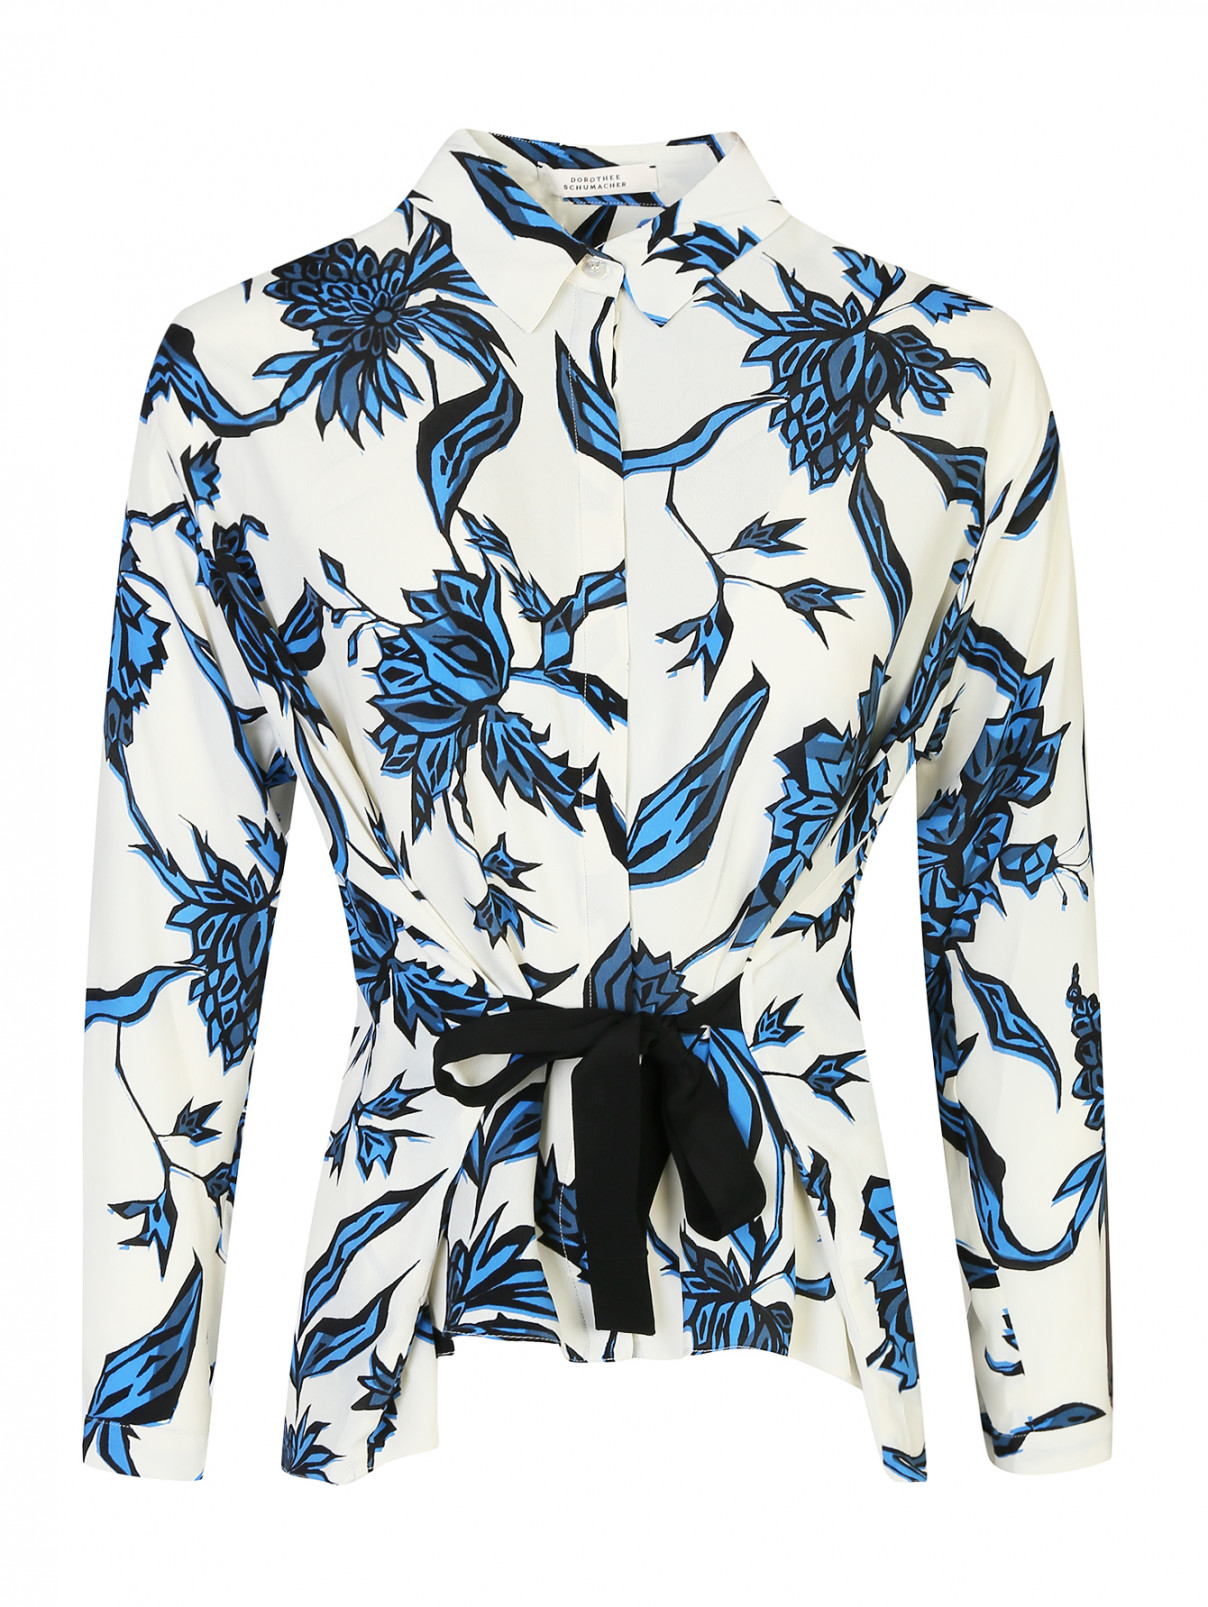 Блуза из шелка с цветочным принтом Dorothee Schumacher  –  Общий вид  – Цвет:  Белый